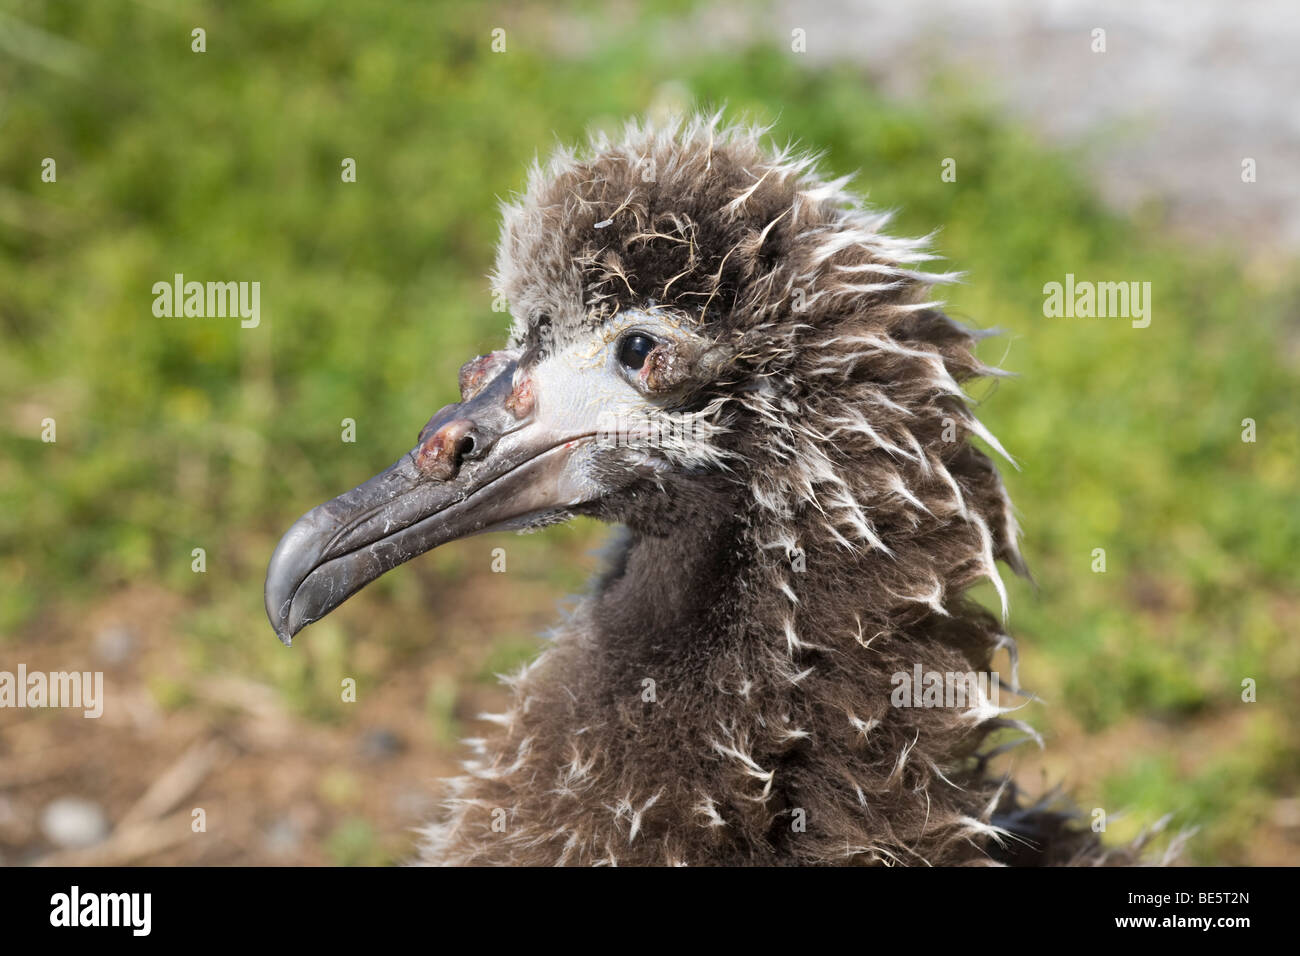 Vogelpockenseuche bei einem jungen Laysan Albatross Küken mit Pusteln auf dem Schirm und um das Auge (Phoebastria immutabilis) Stockfoto